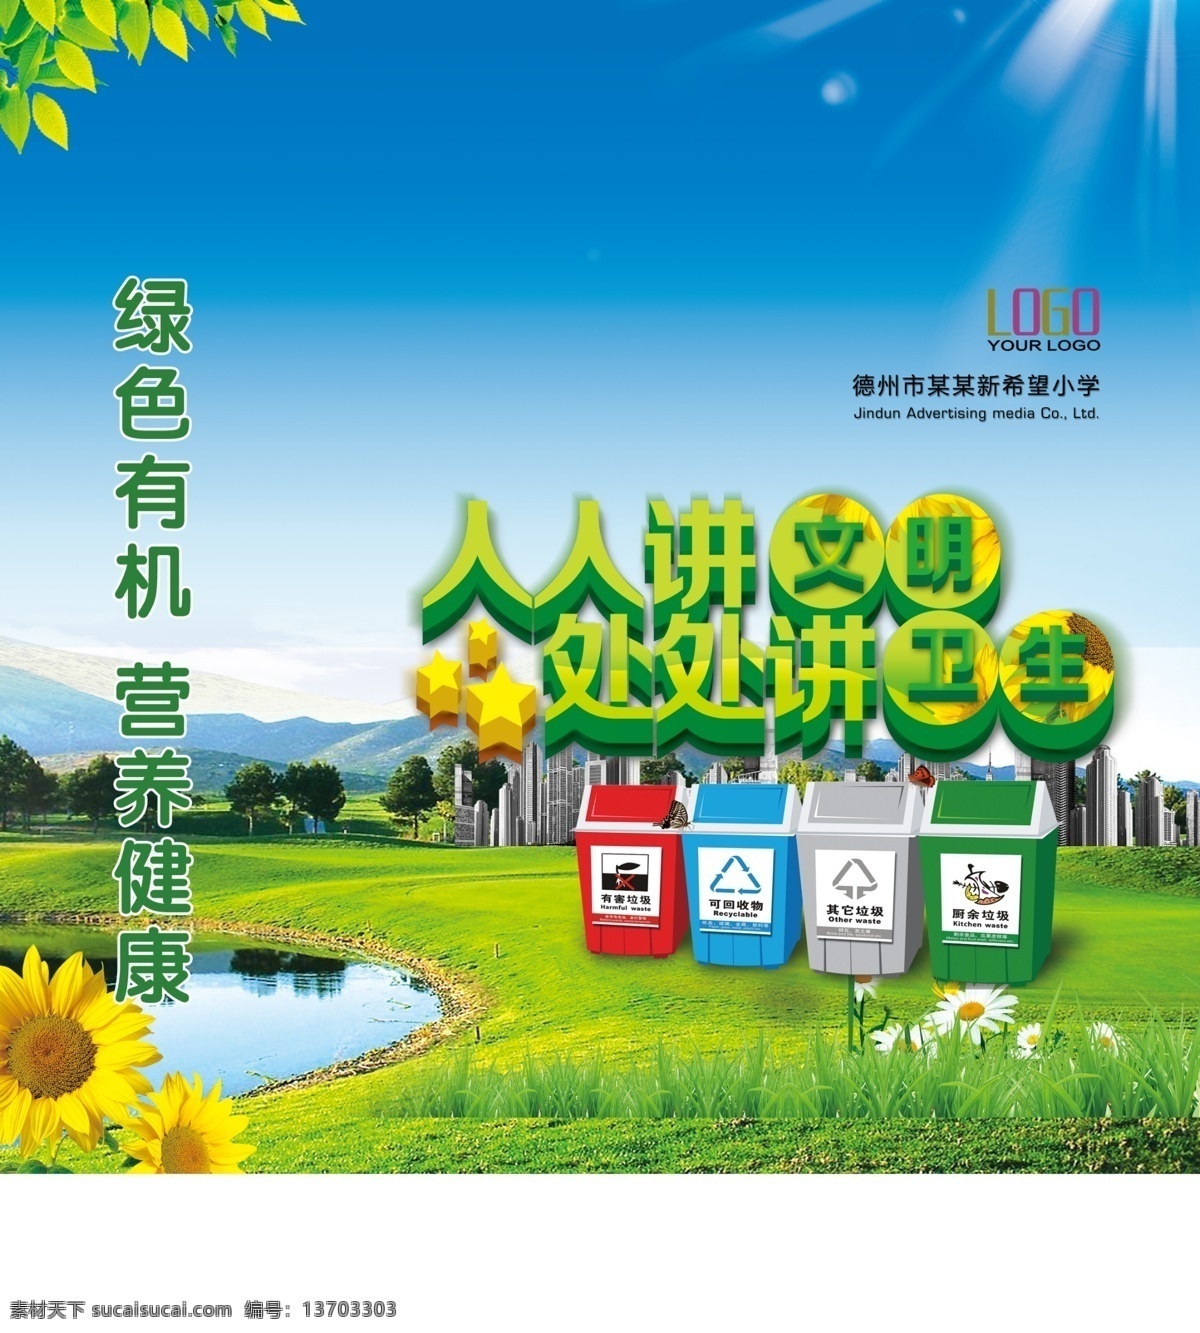 环保展板 环保 绿色 低碳 垃圾箱 讲文明 城市建设 城市文明 城市环保 绿色节能